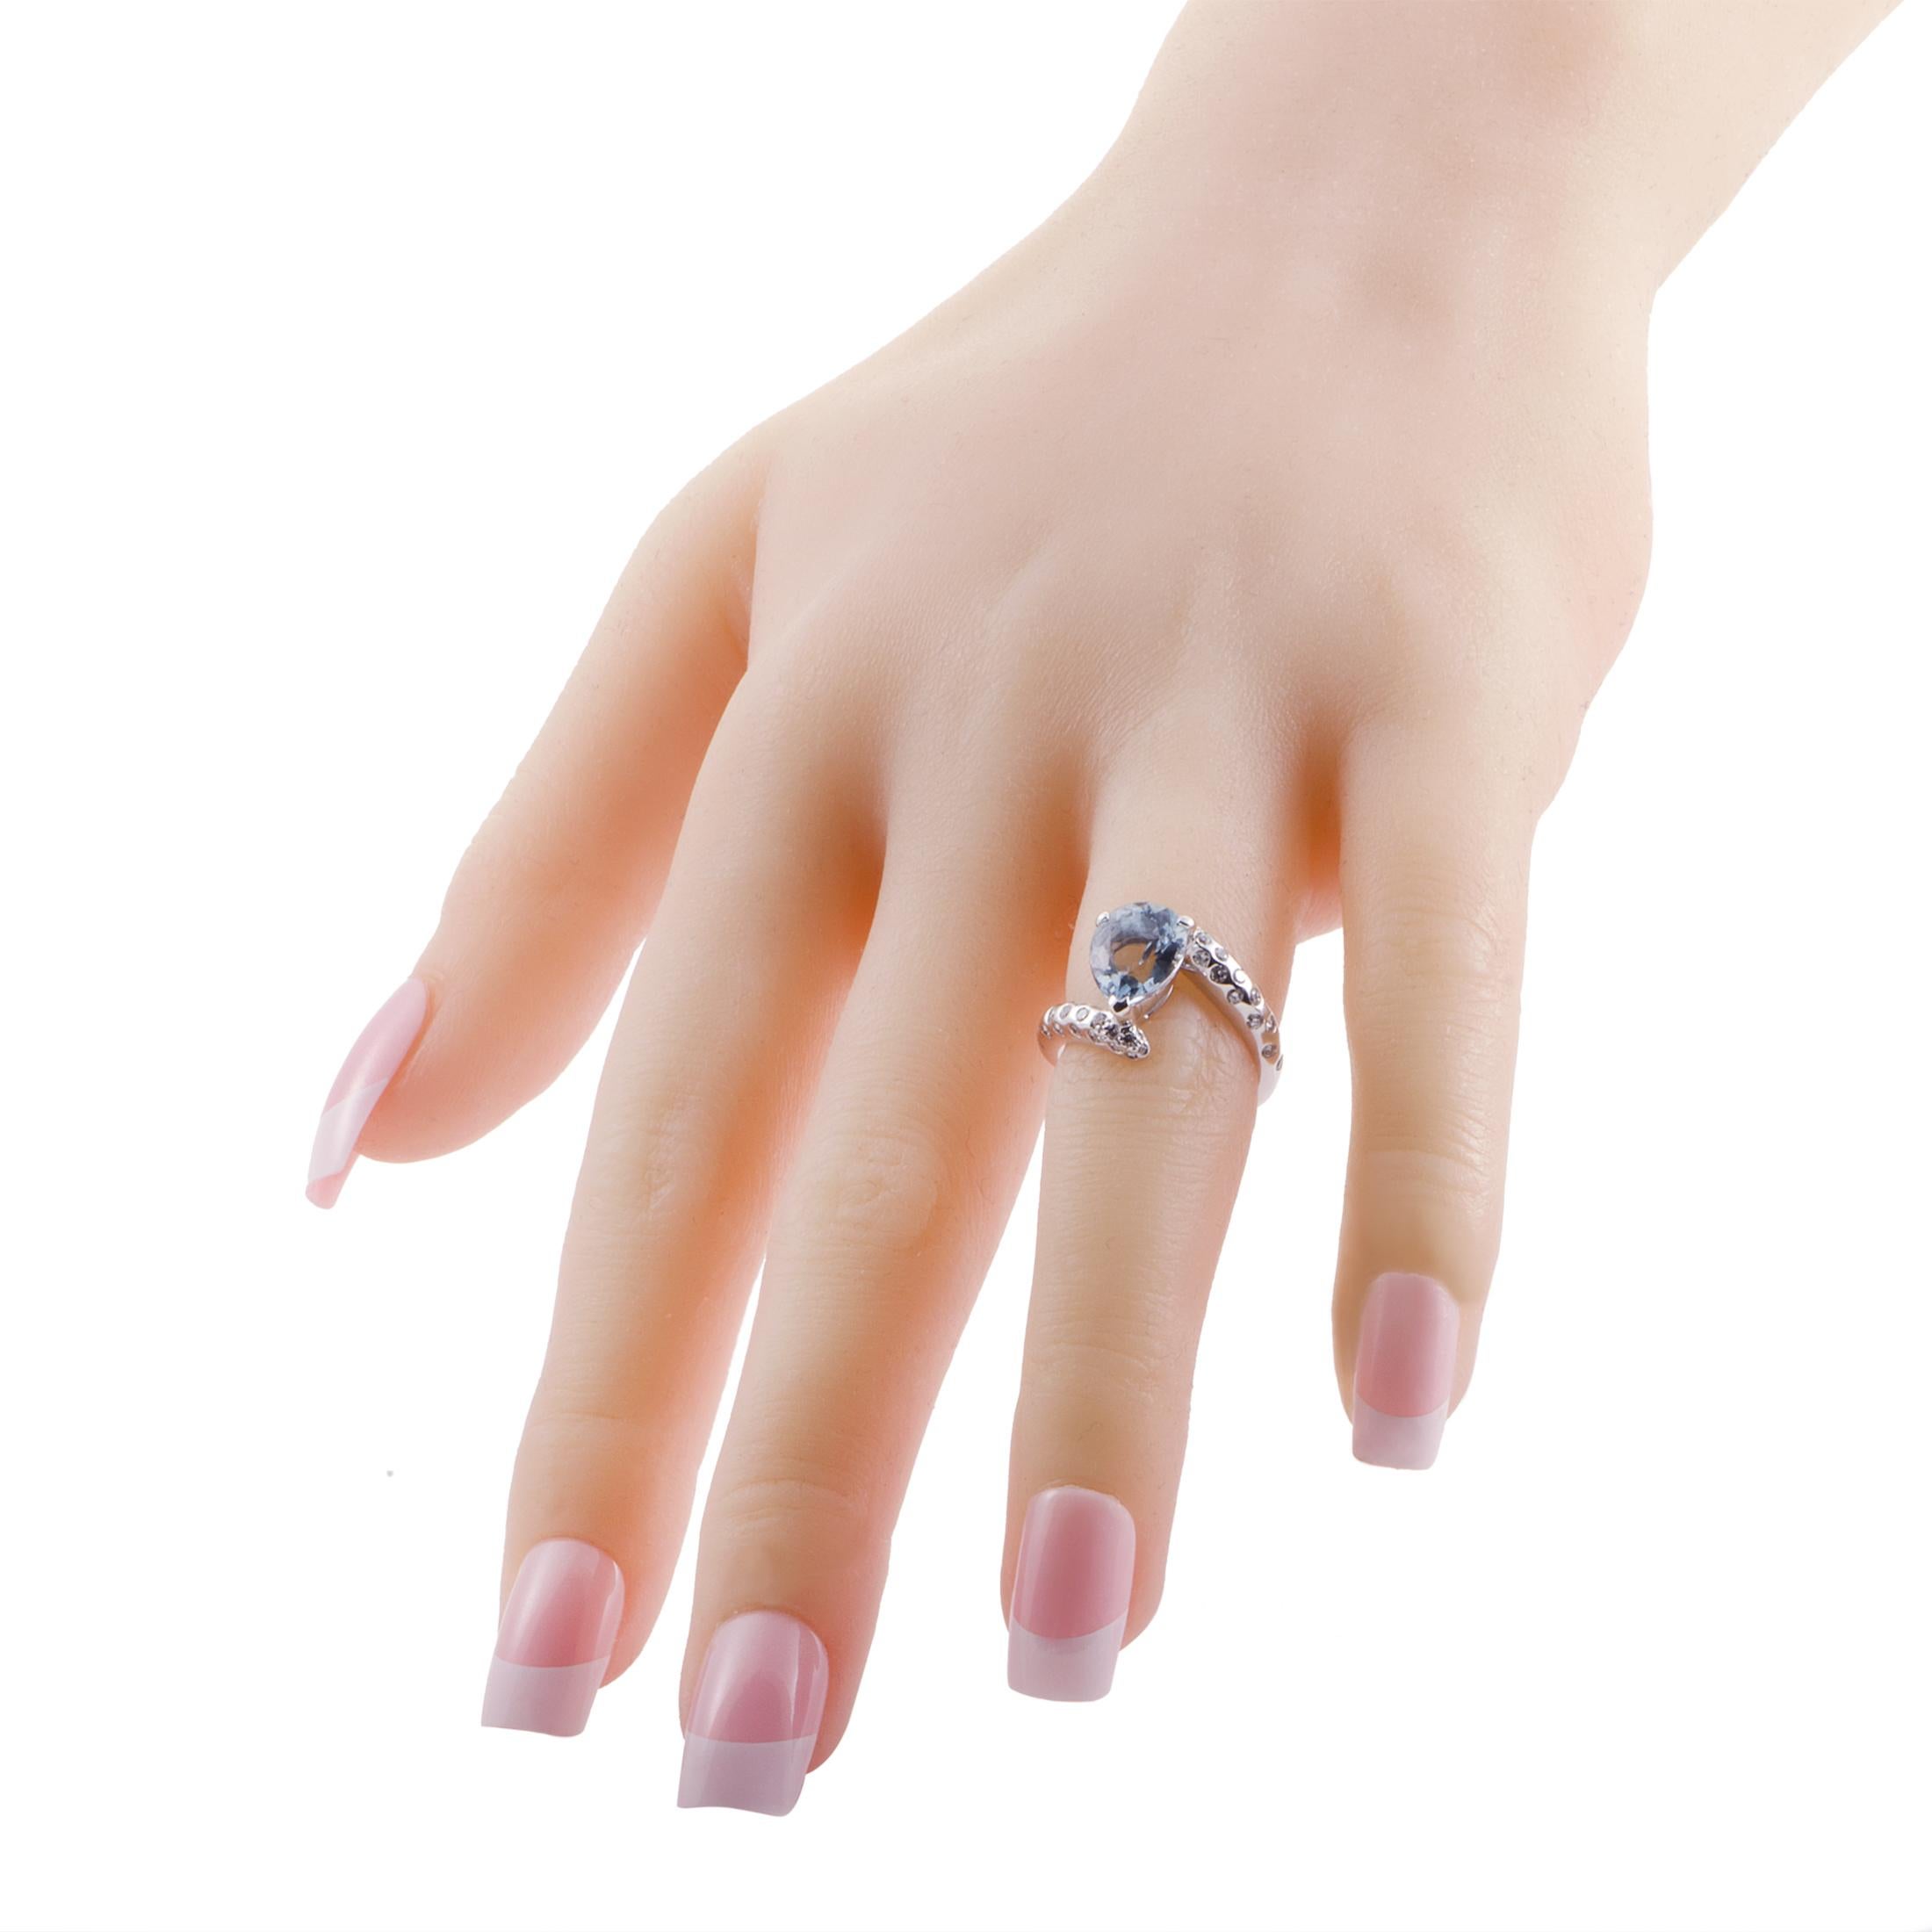 Women's Chanel 18 Karat White Gold Diamond and Aquamarine Ring